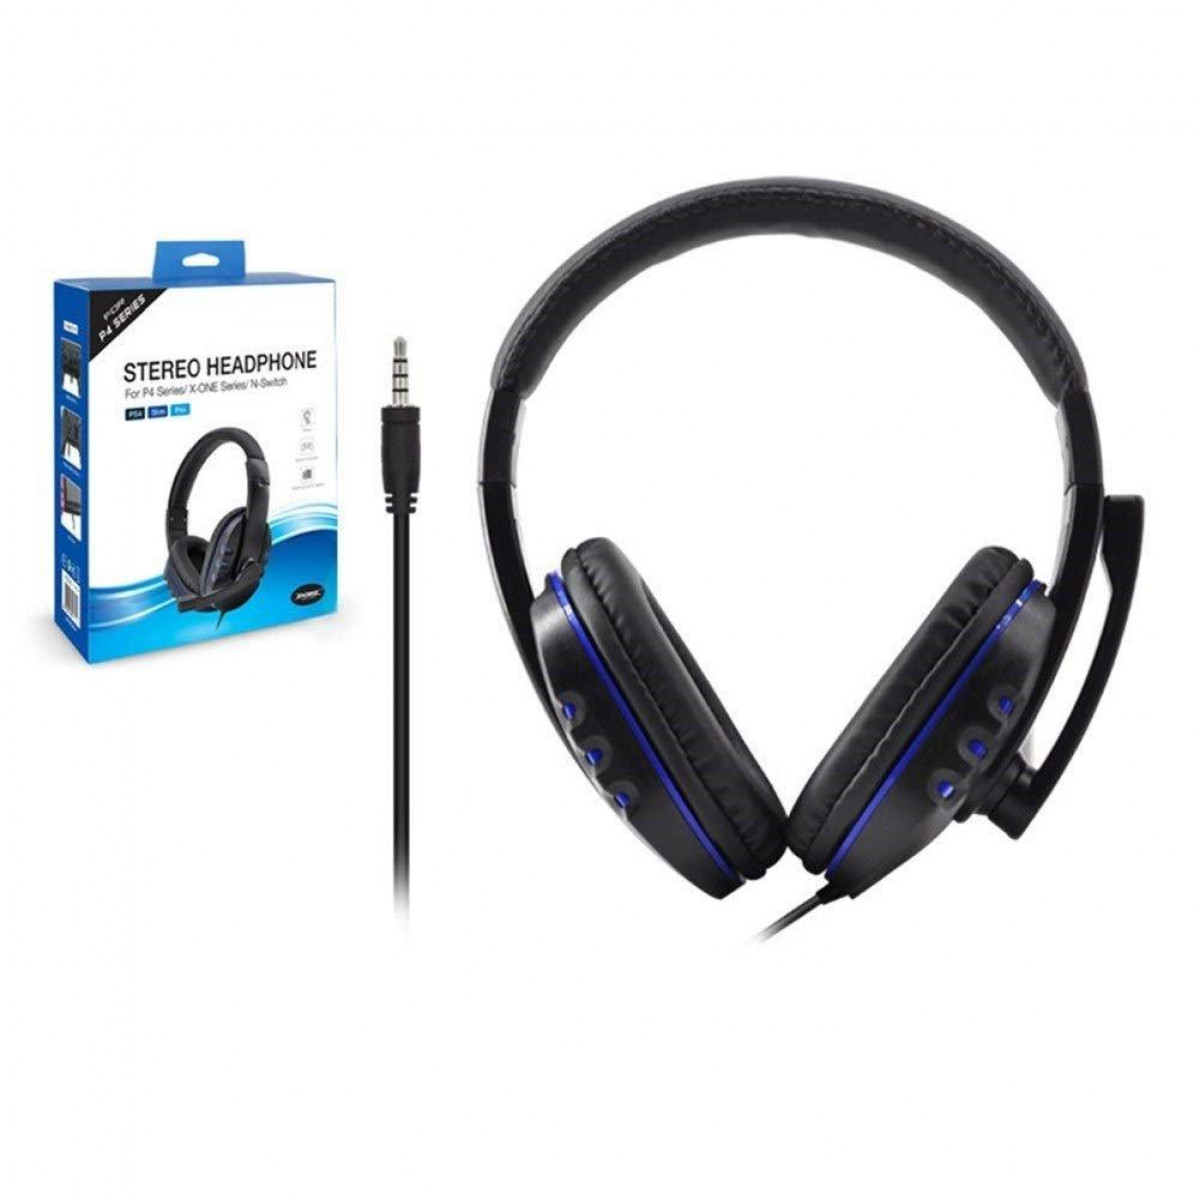 INF 3D Surround Headset Gaming One/N-Switch, Over-ear PS4/Xbox Headset blau schwarz für und Gaming Sound